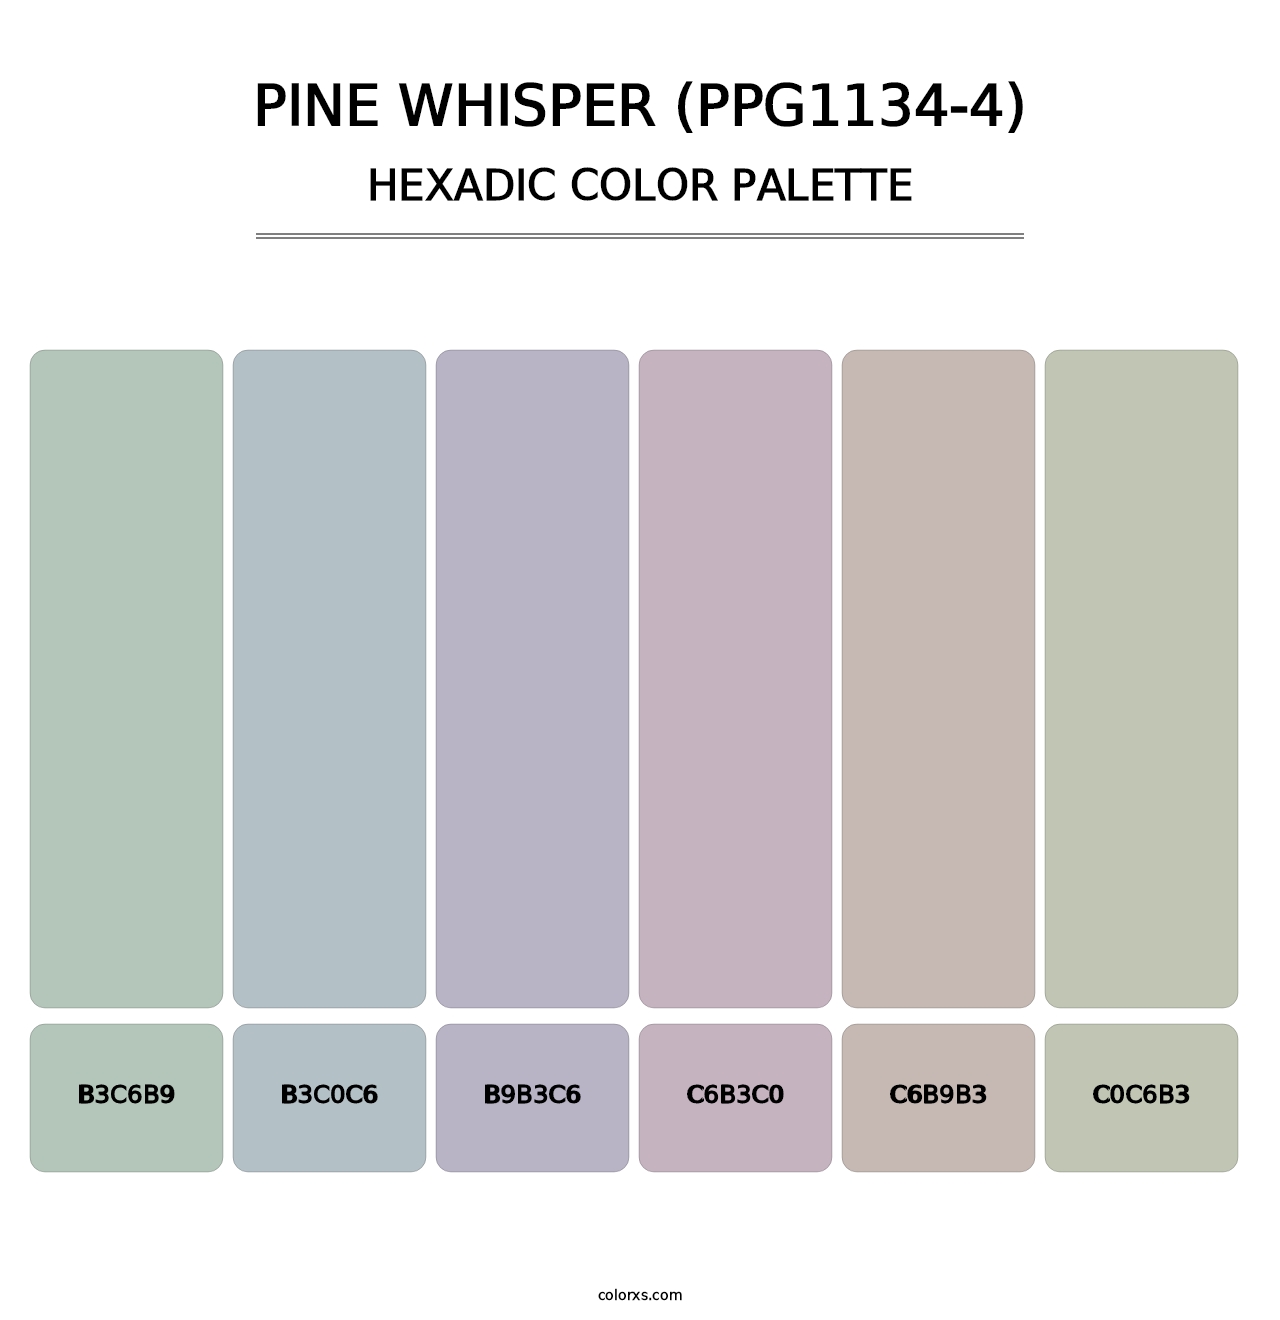 Pine Whisper (PPG1134-4) - Hexadic Color Palette